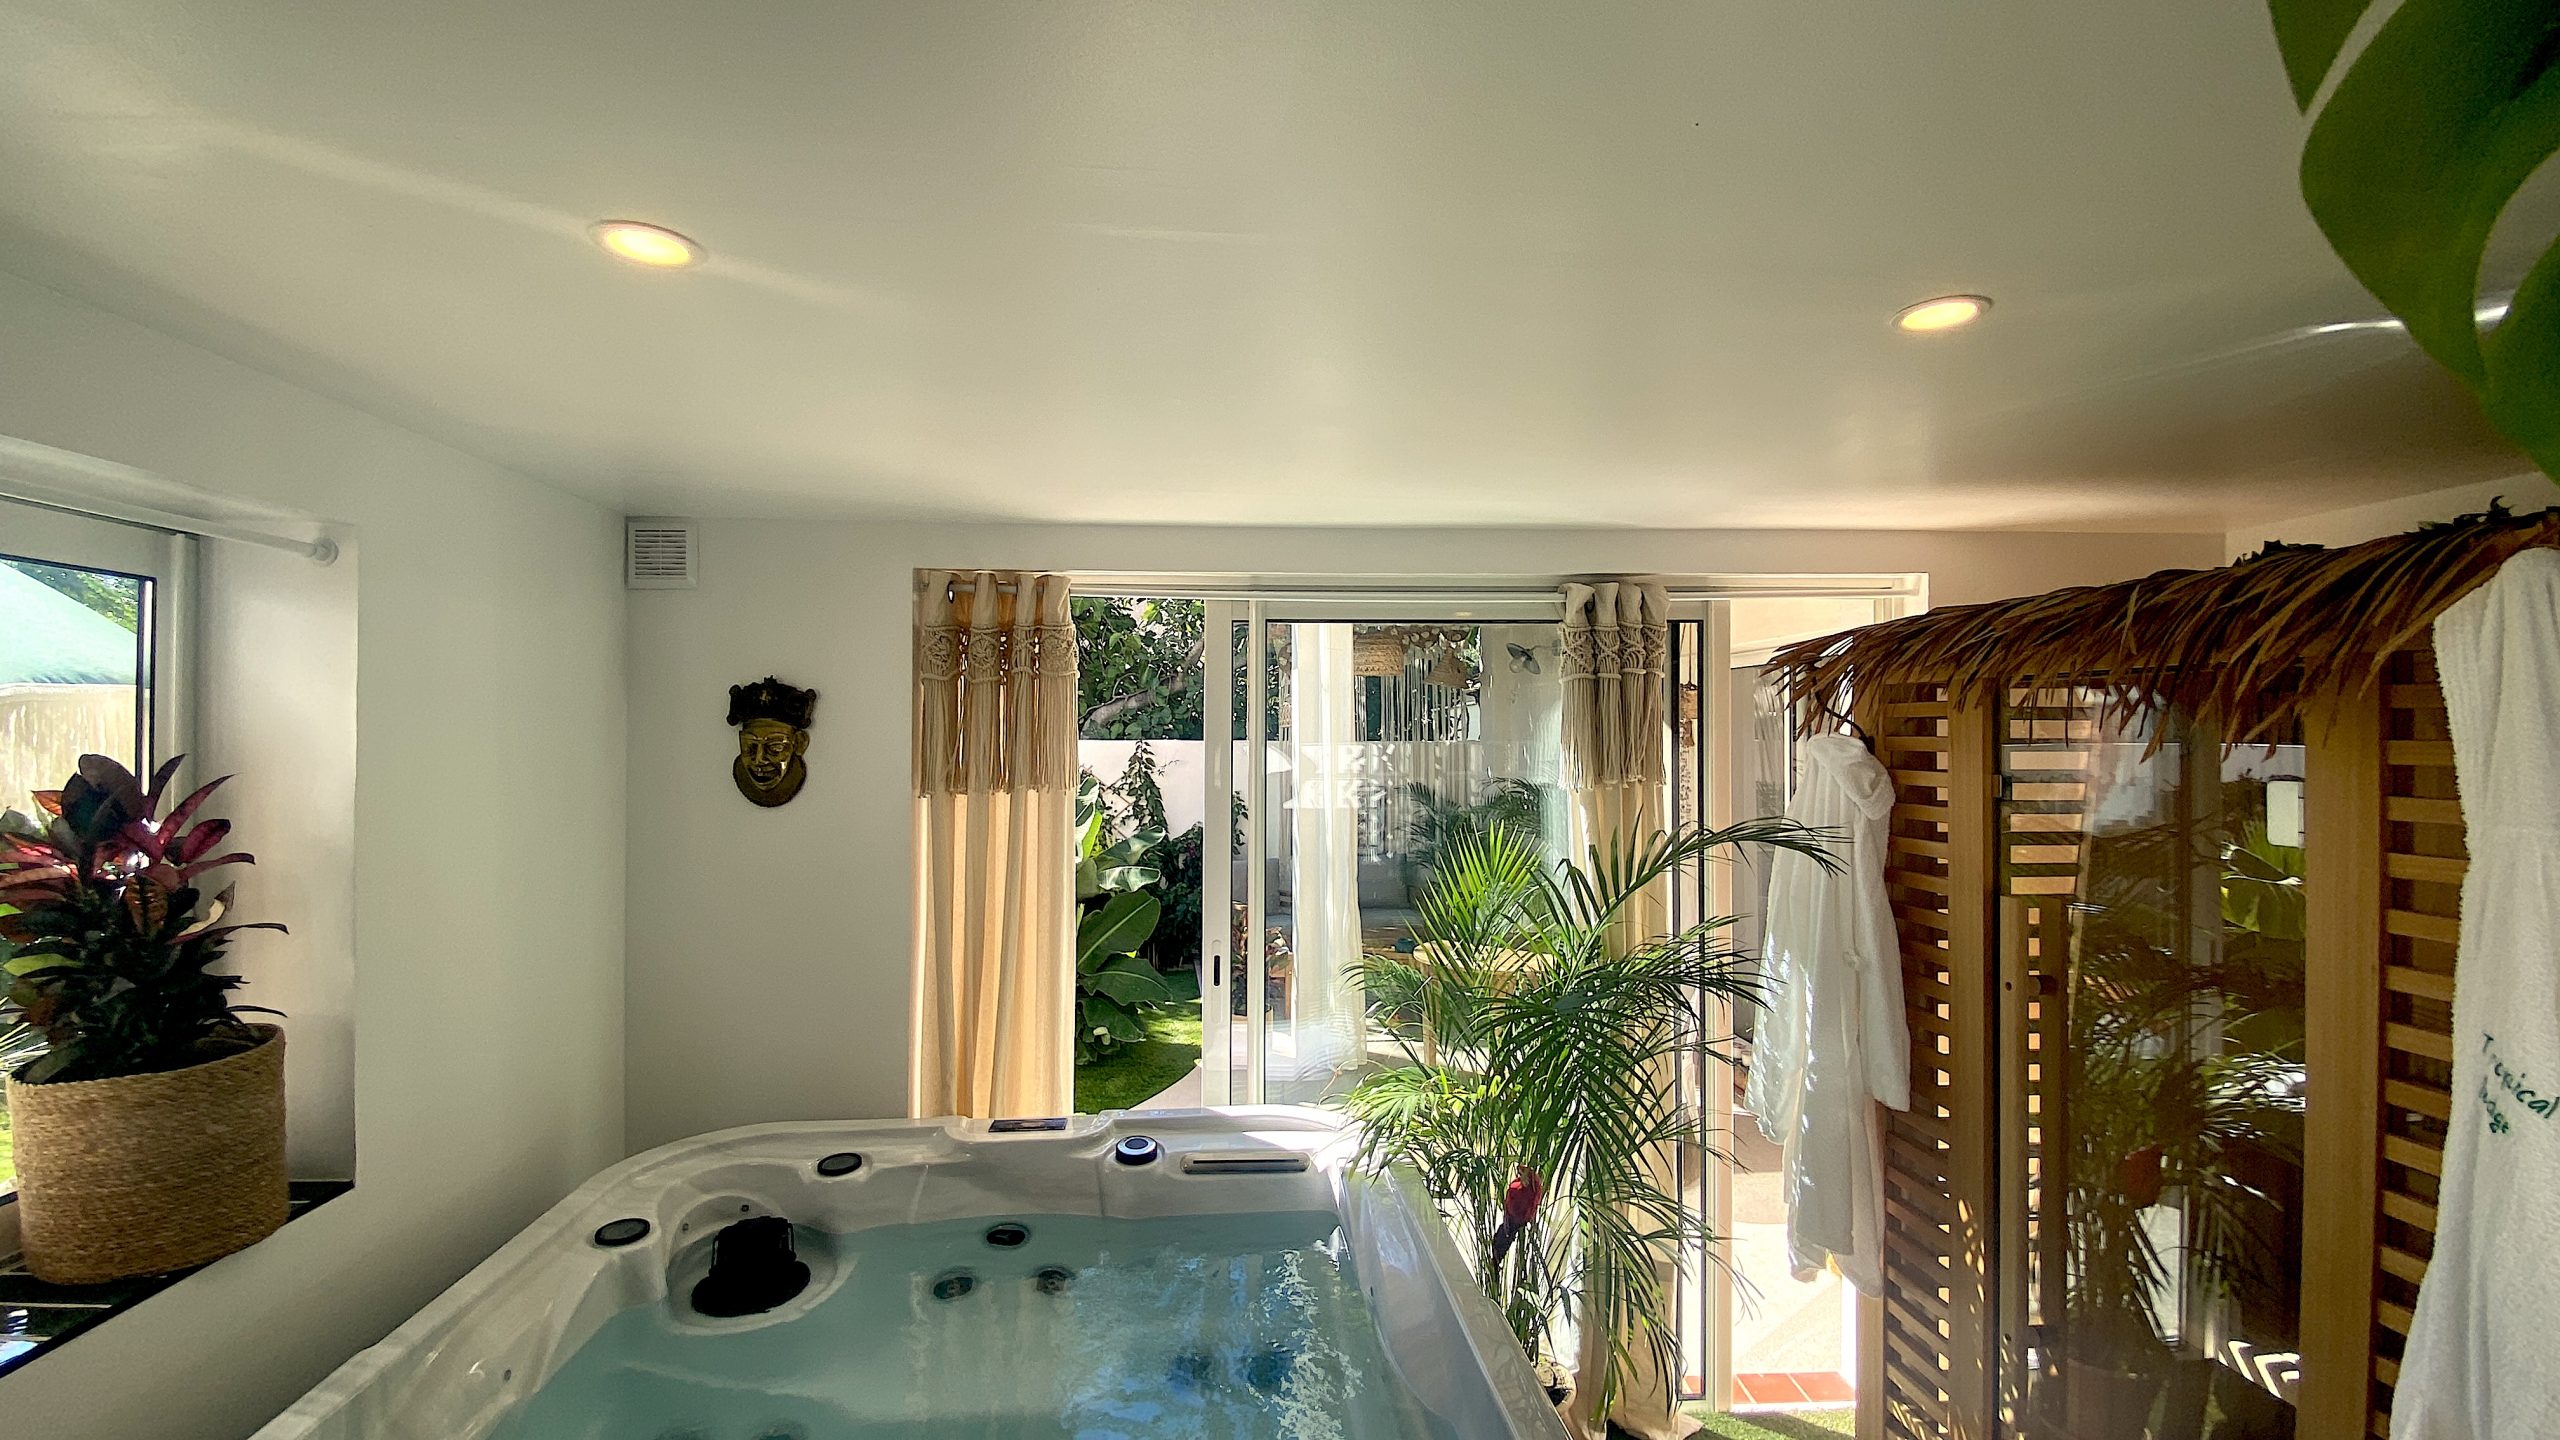 Espace de bien-être avec jacuzzi, piscine et sauna privatifs dans le sud de la France pour un séjour romantique en amoureux a Narbonne dans l'Aude